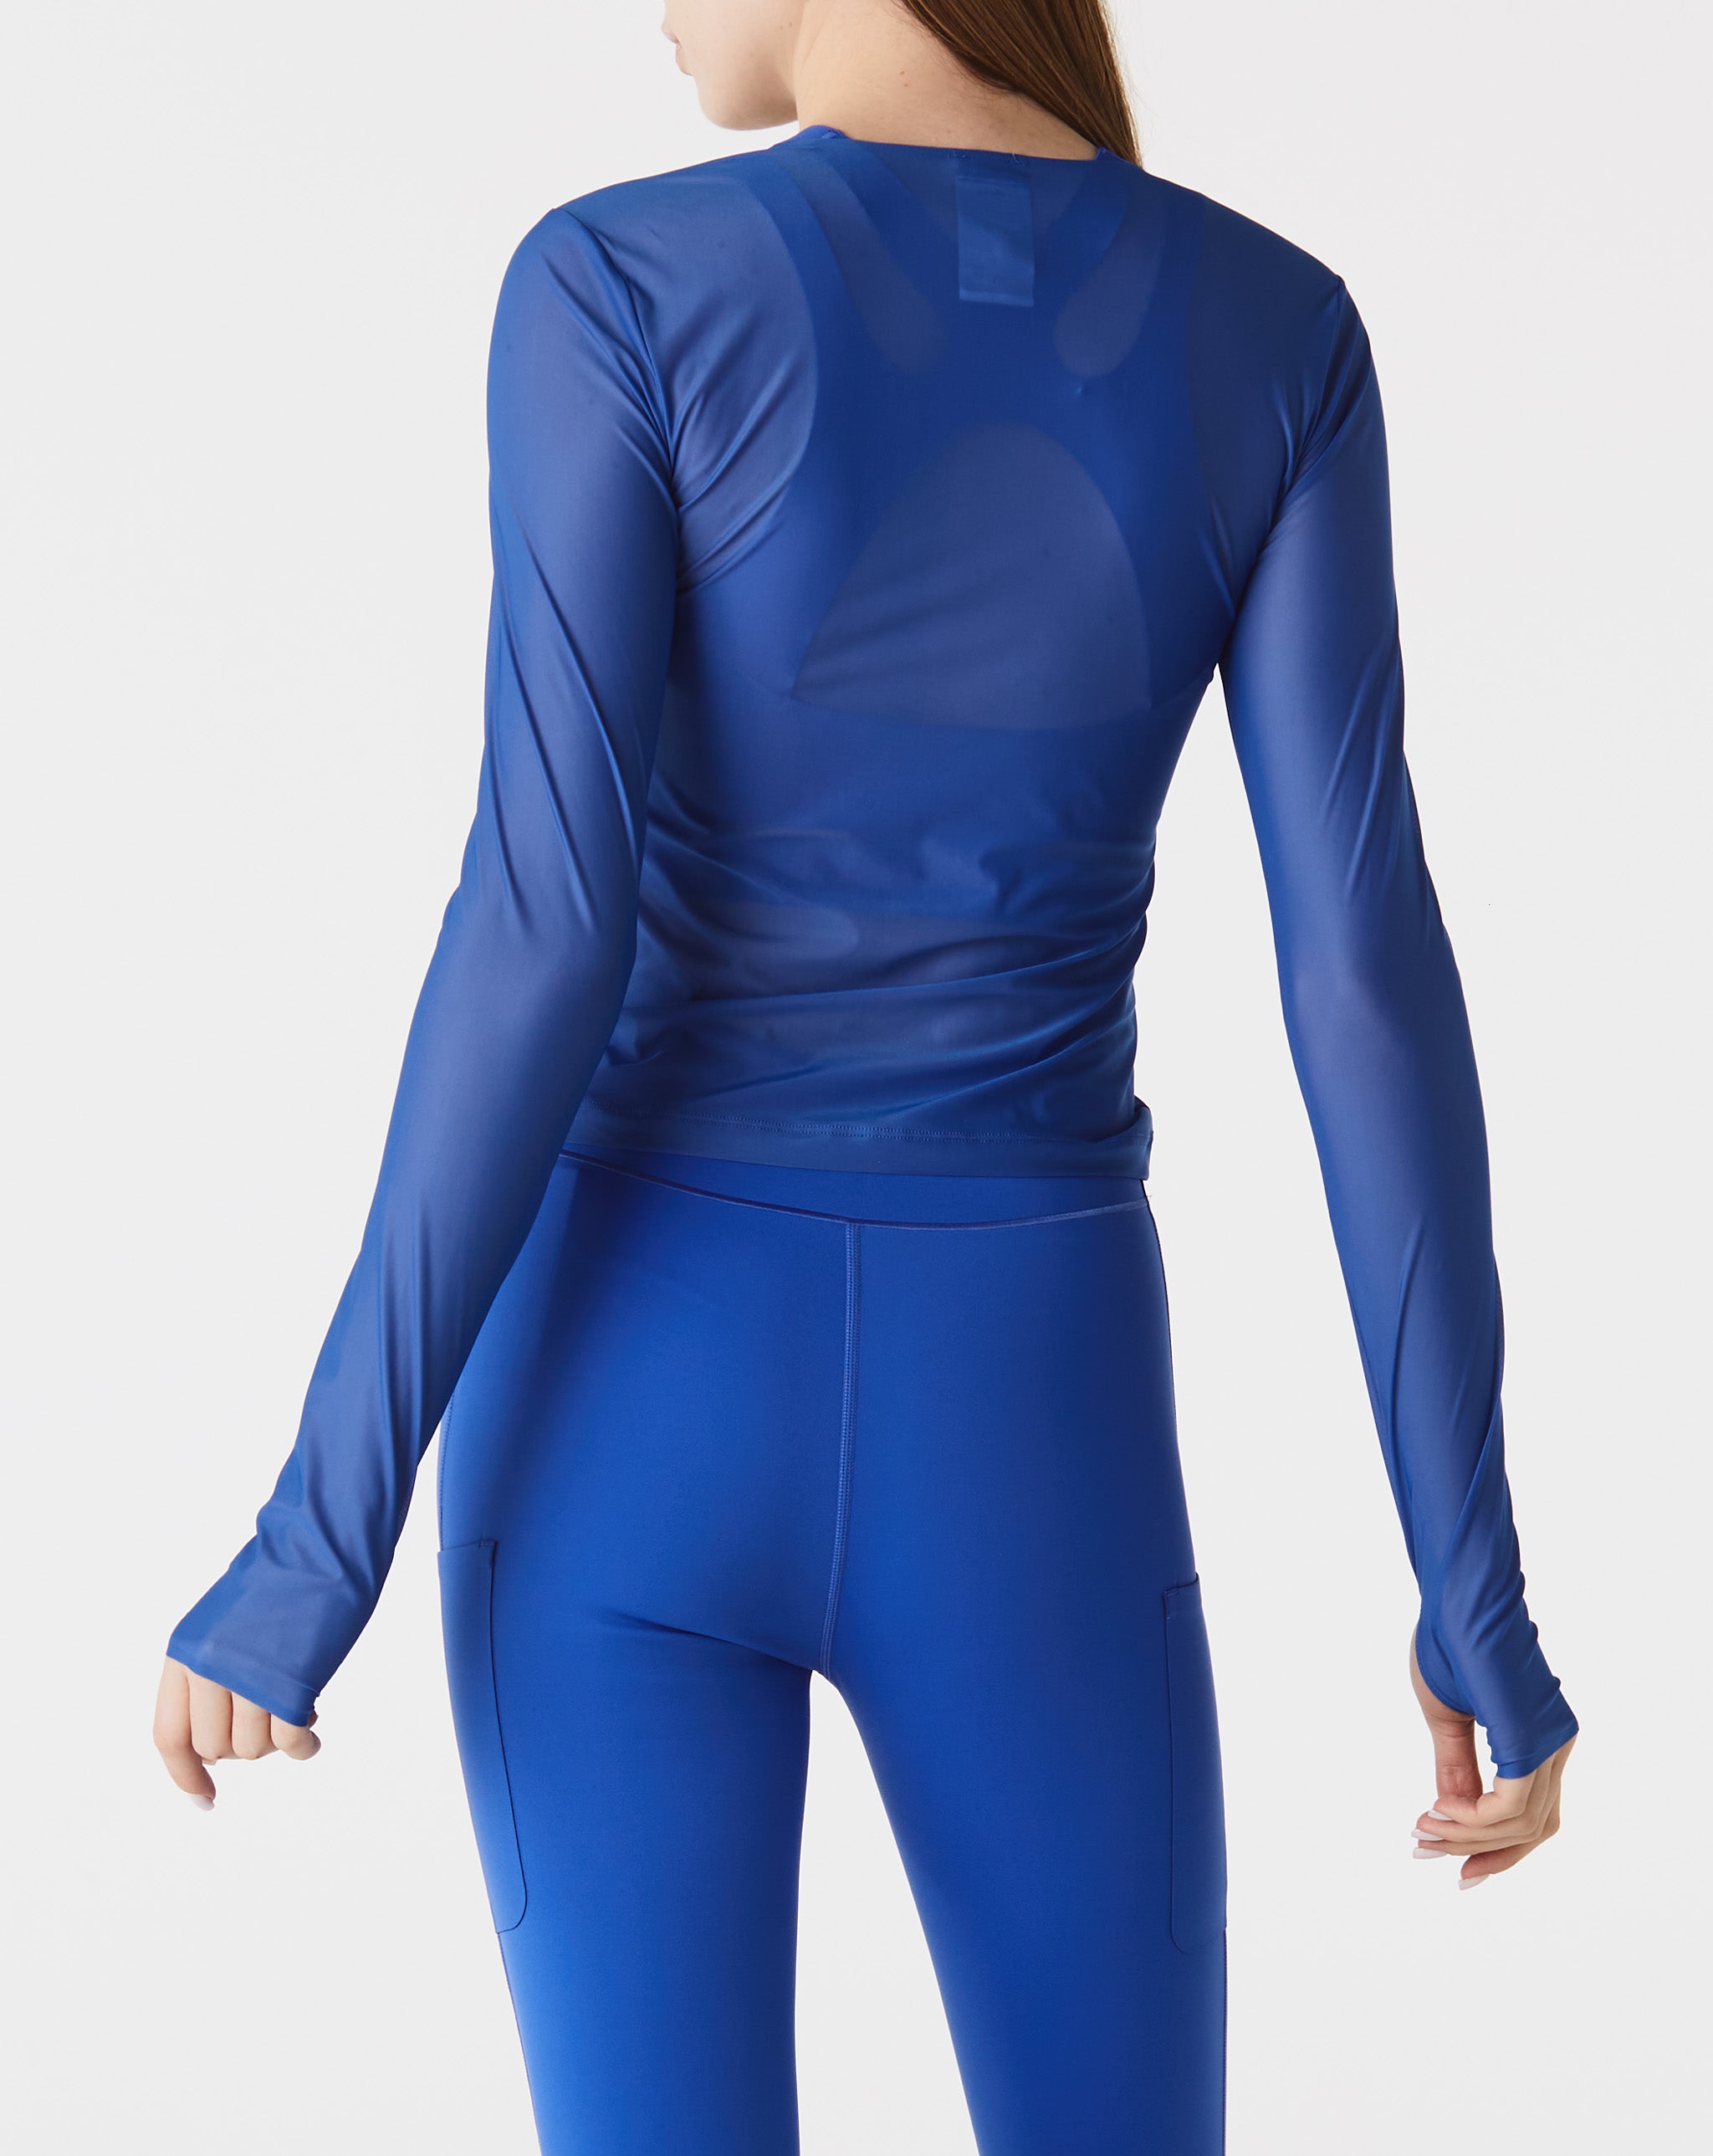 Nike Women's FutureMove Dri-FIT Long-Sleeve Sheer Top  - XHIBITION